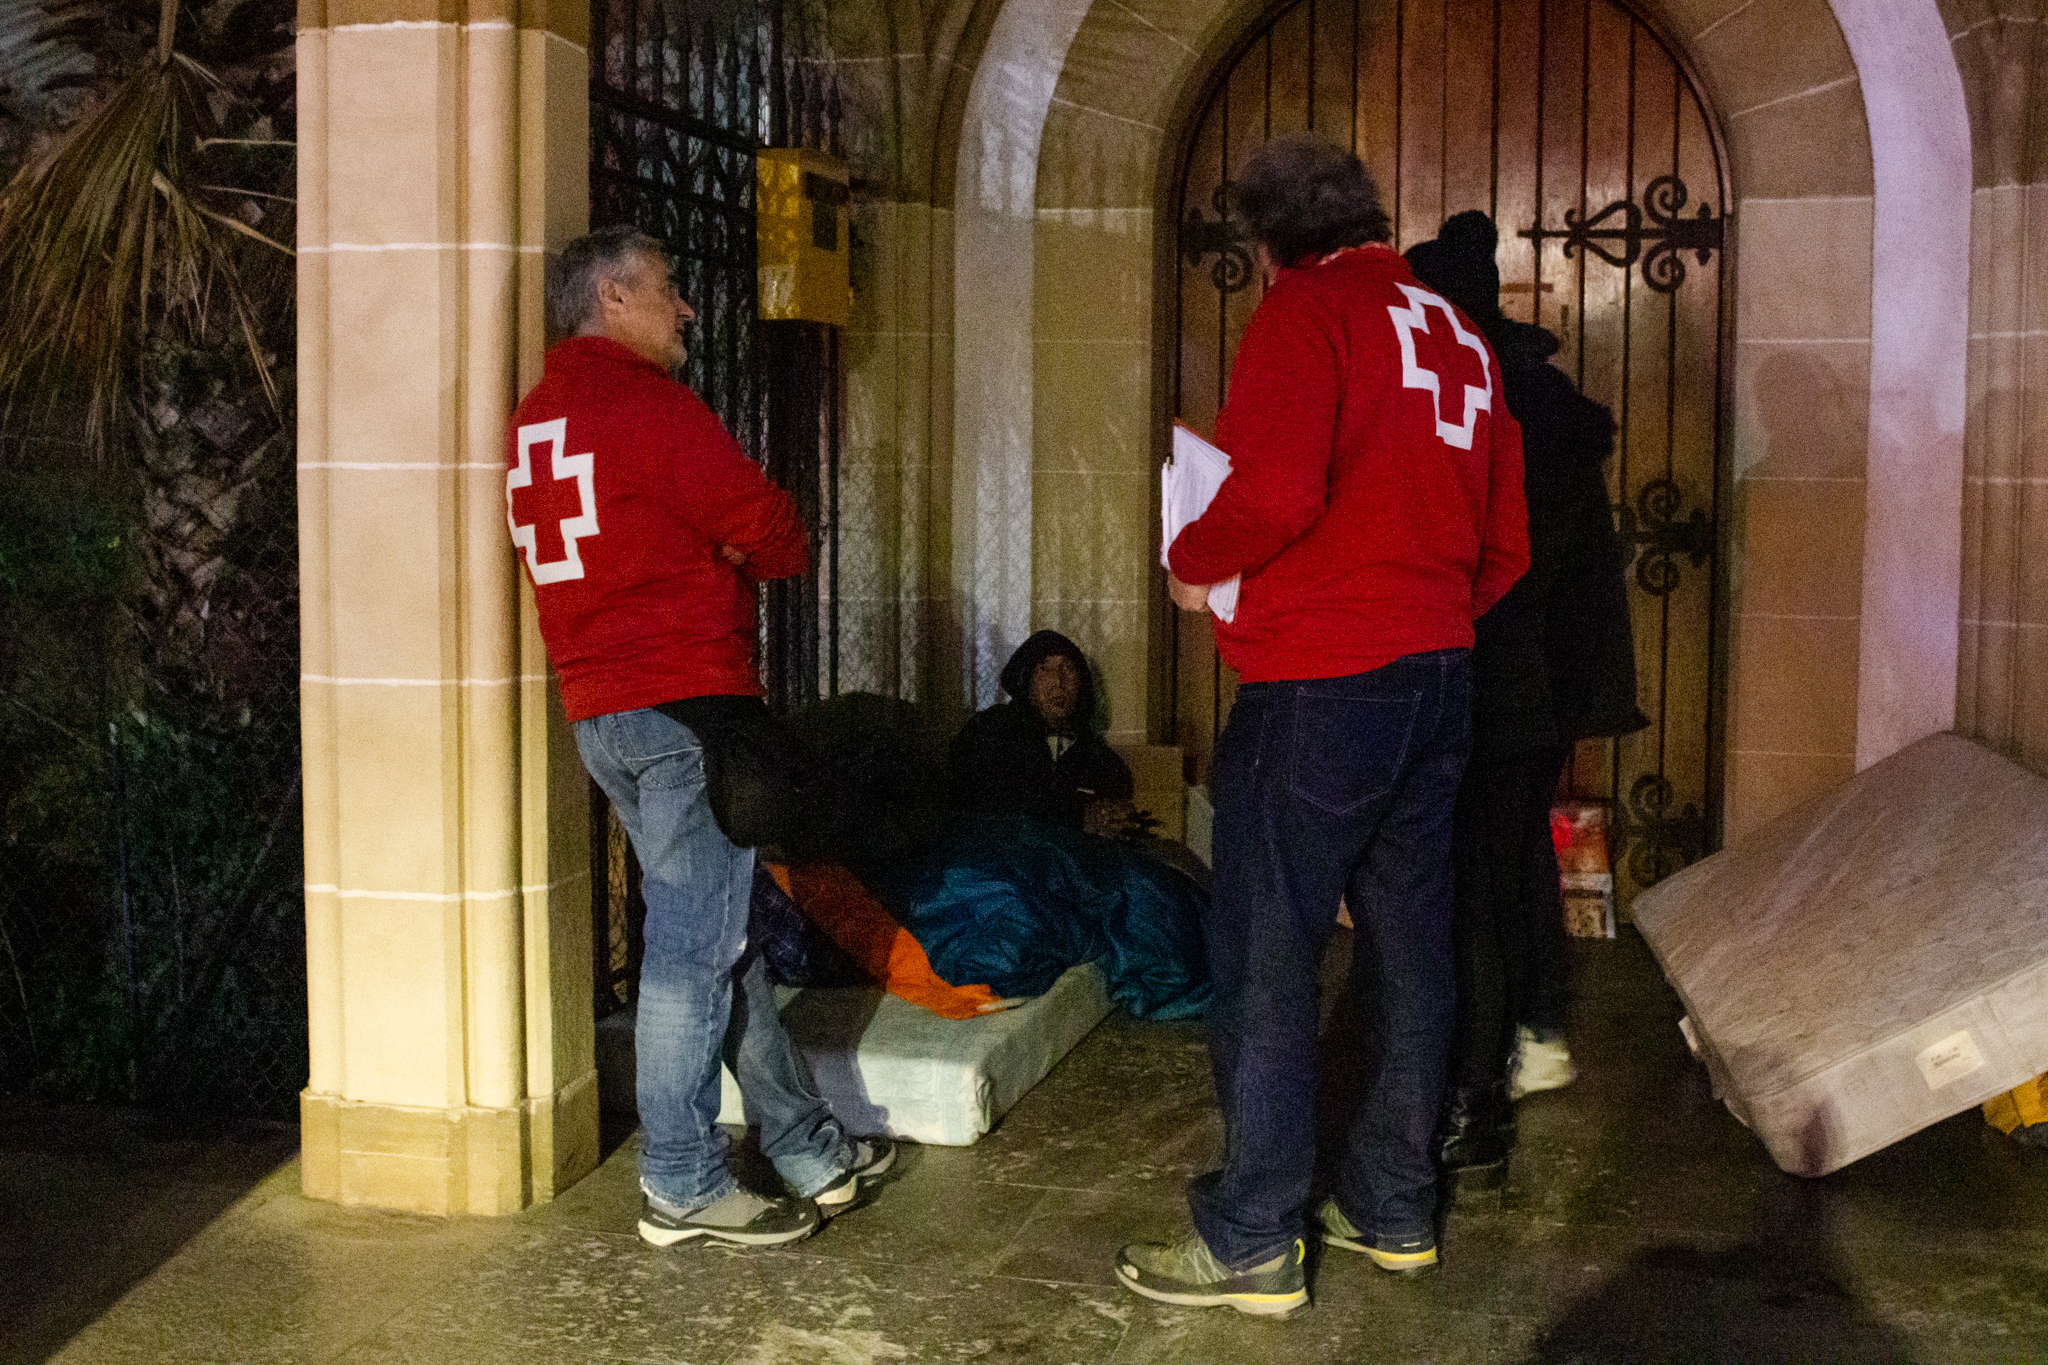 La Creu Roja, Ningú Sense Sostre i Actuavallès fan batudes durant l’hivern per assistir les persones sense sostre